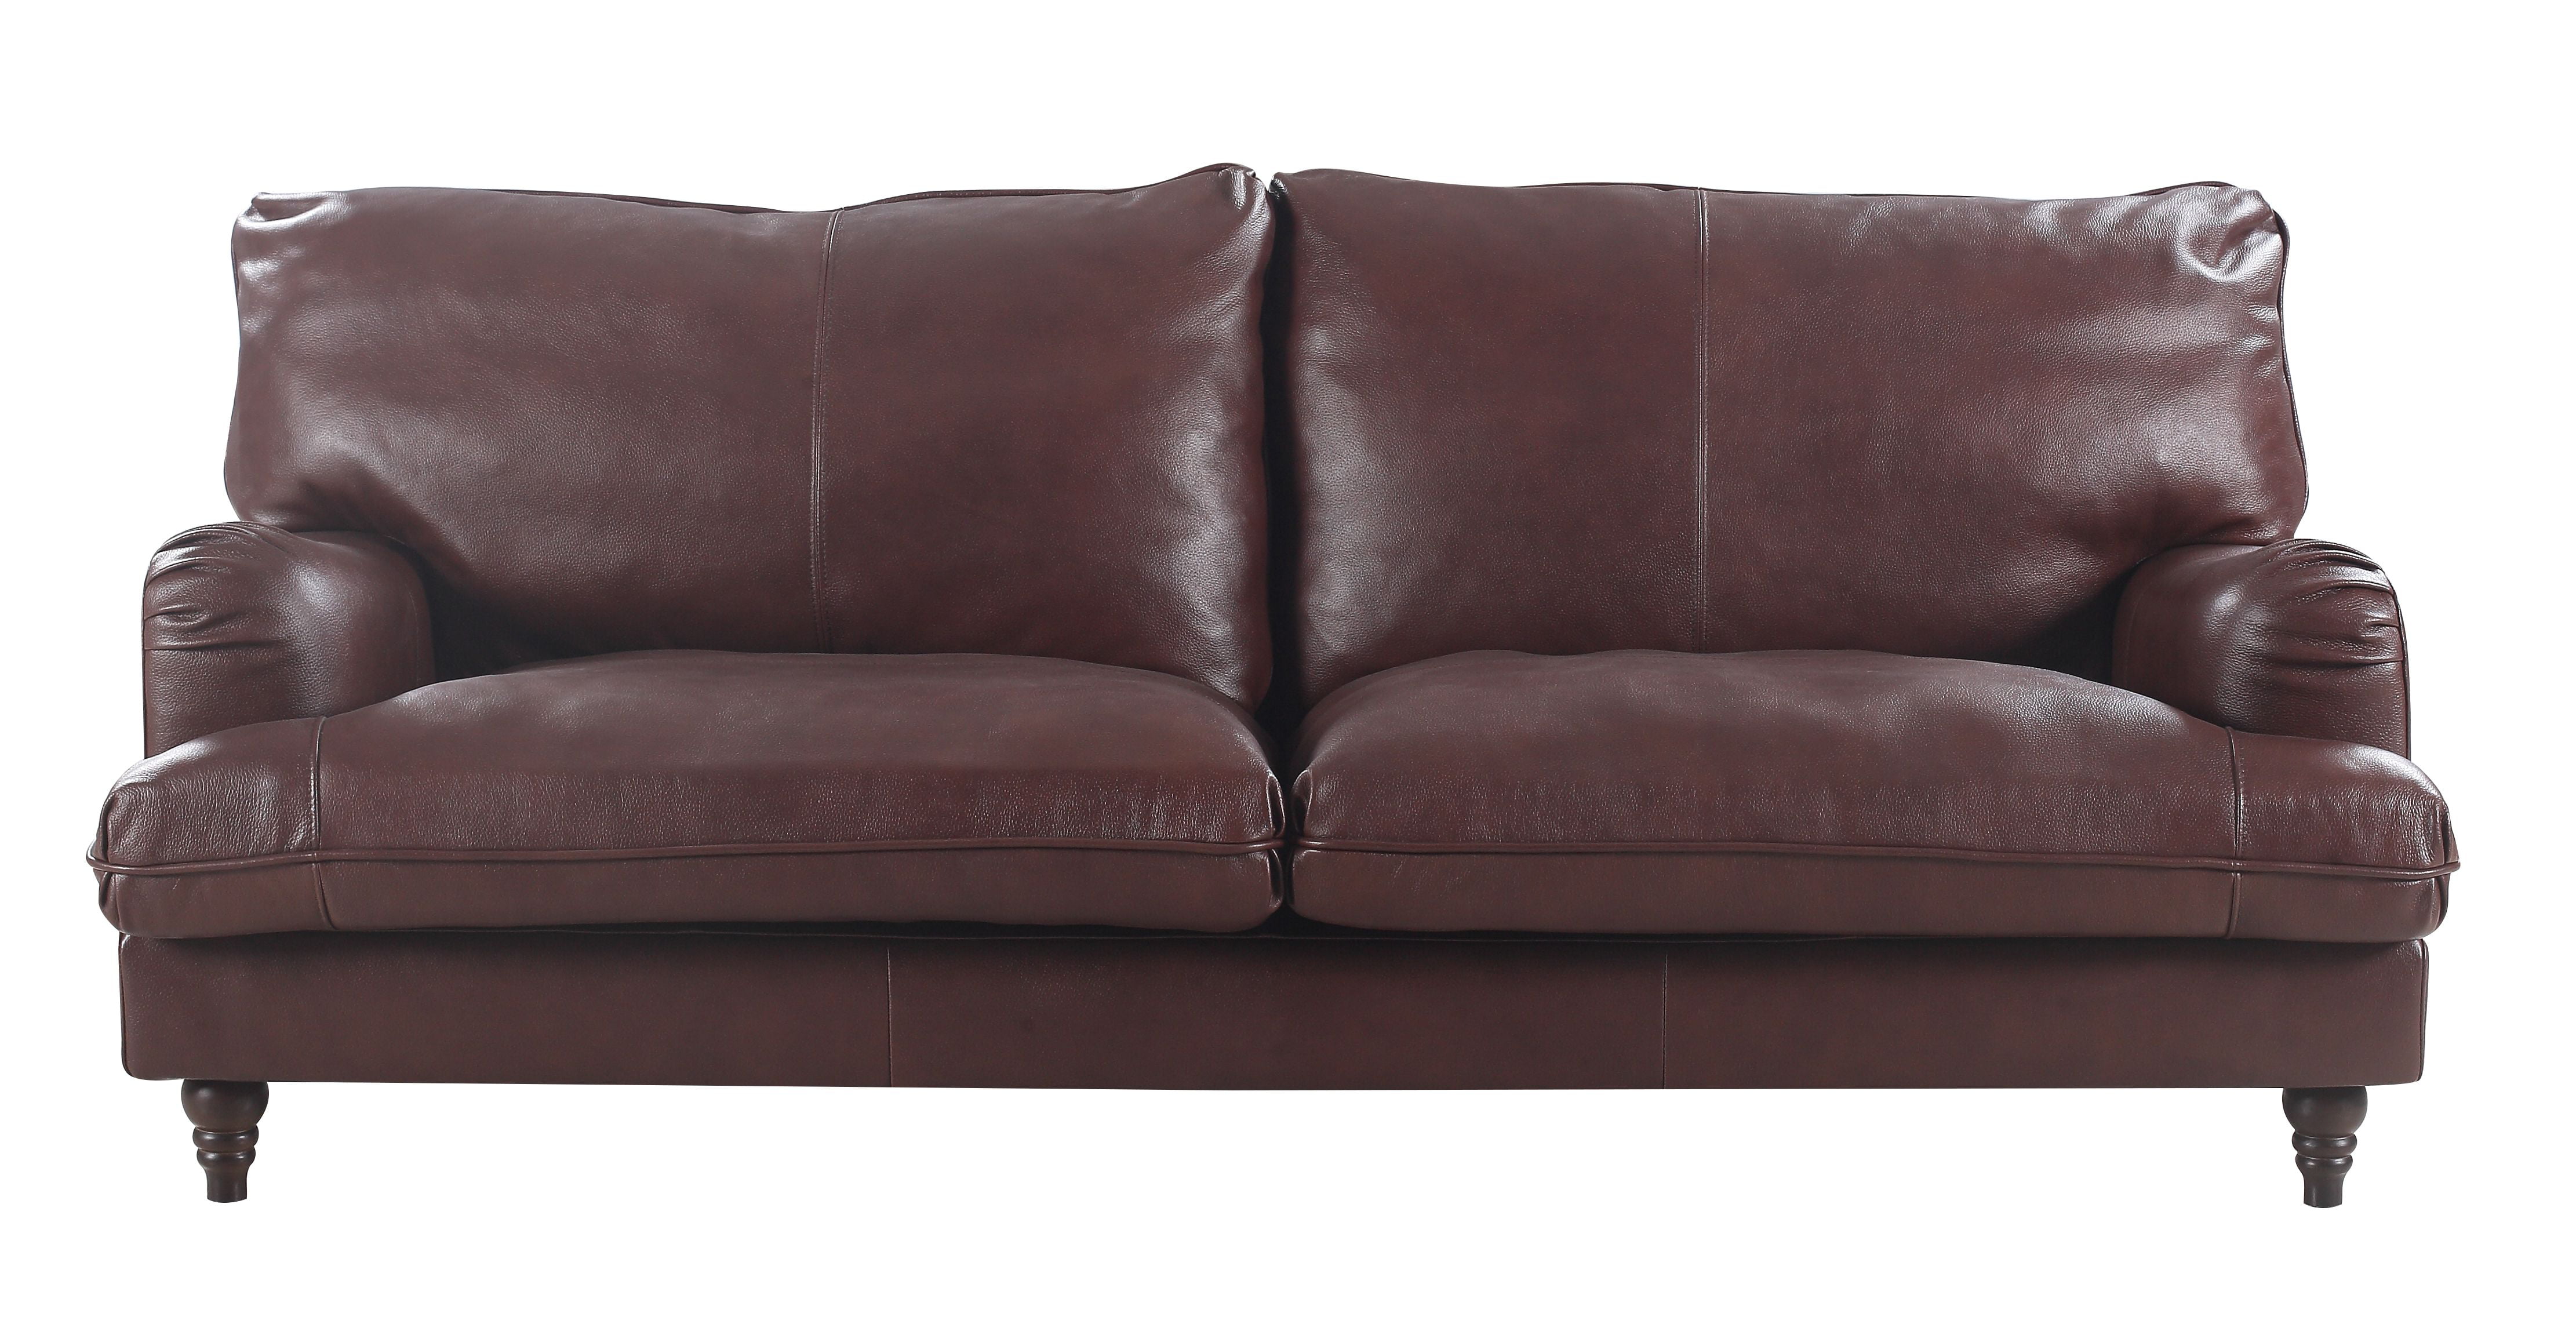 classic italian leather sofa